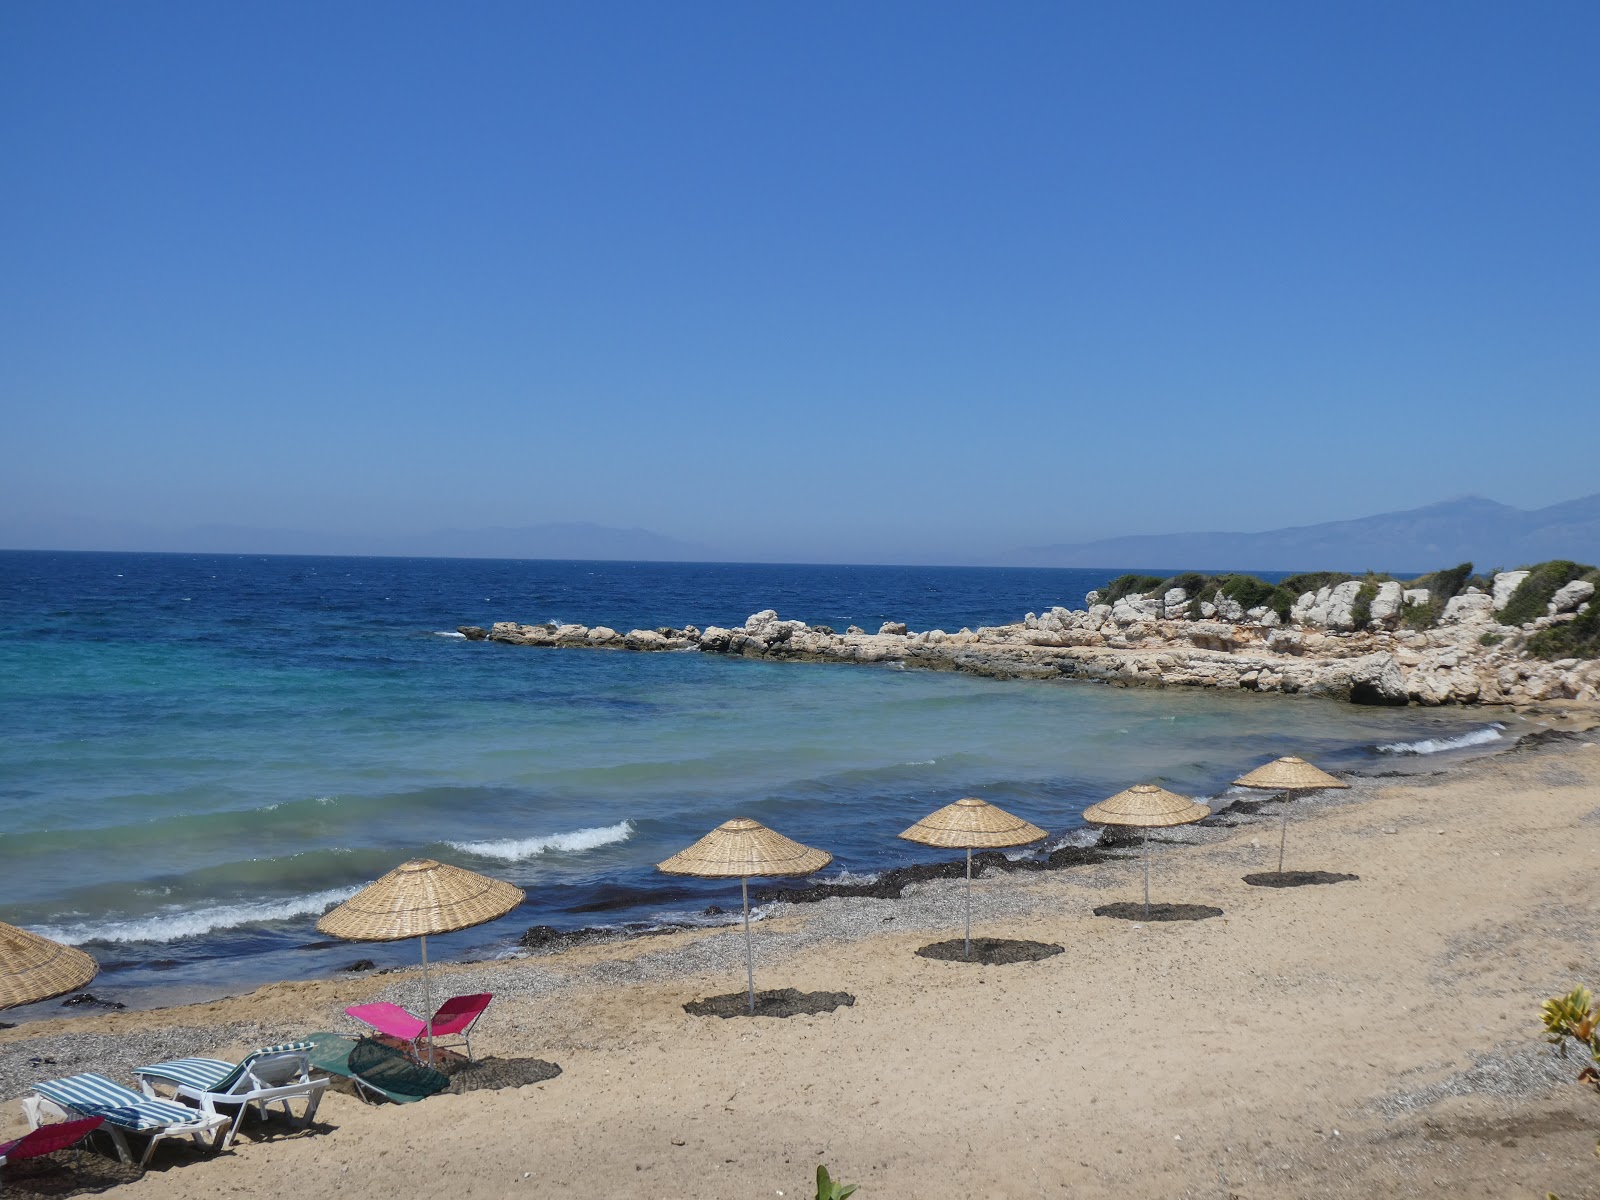 Sarıkum Plajı'in fotoğrafı kahverengi kum yüzey ile